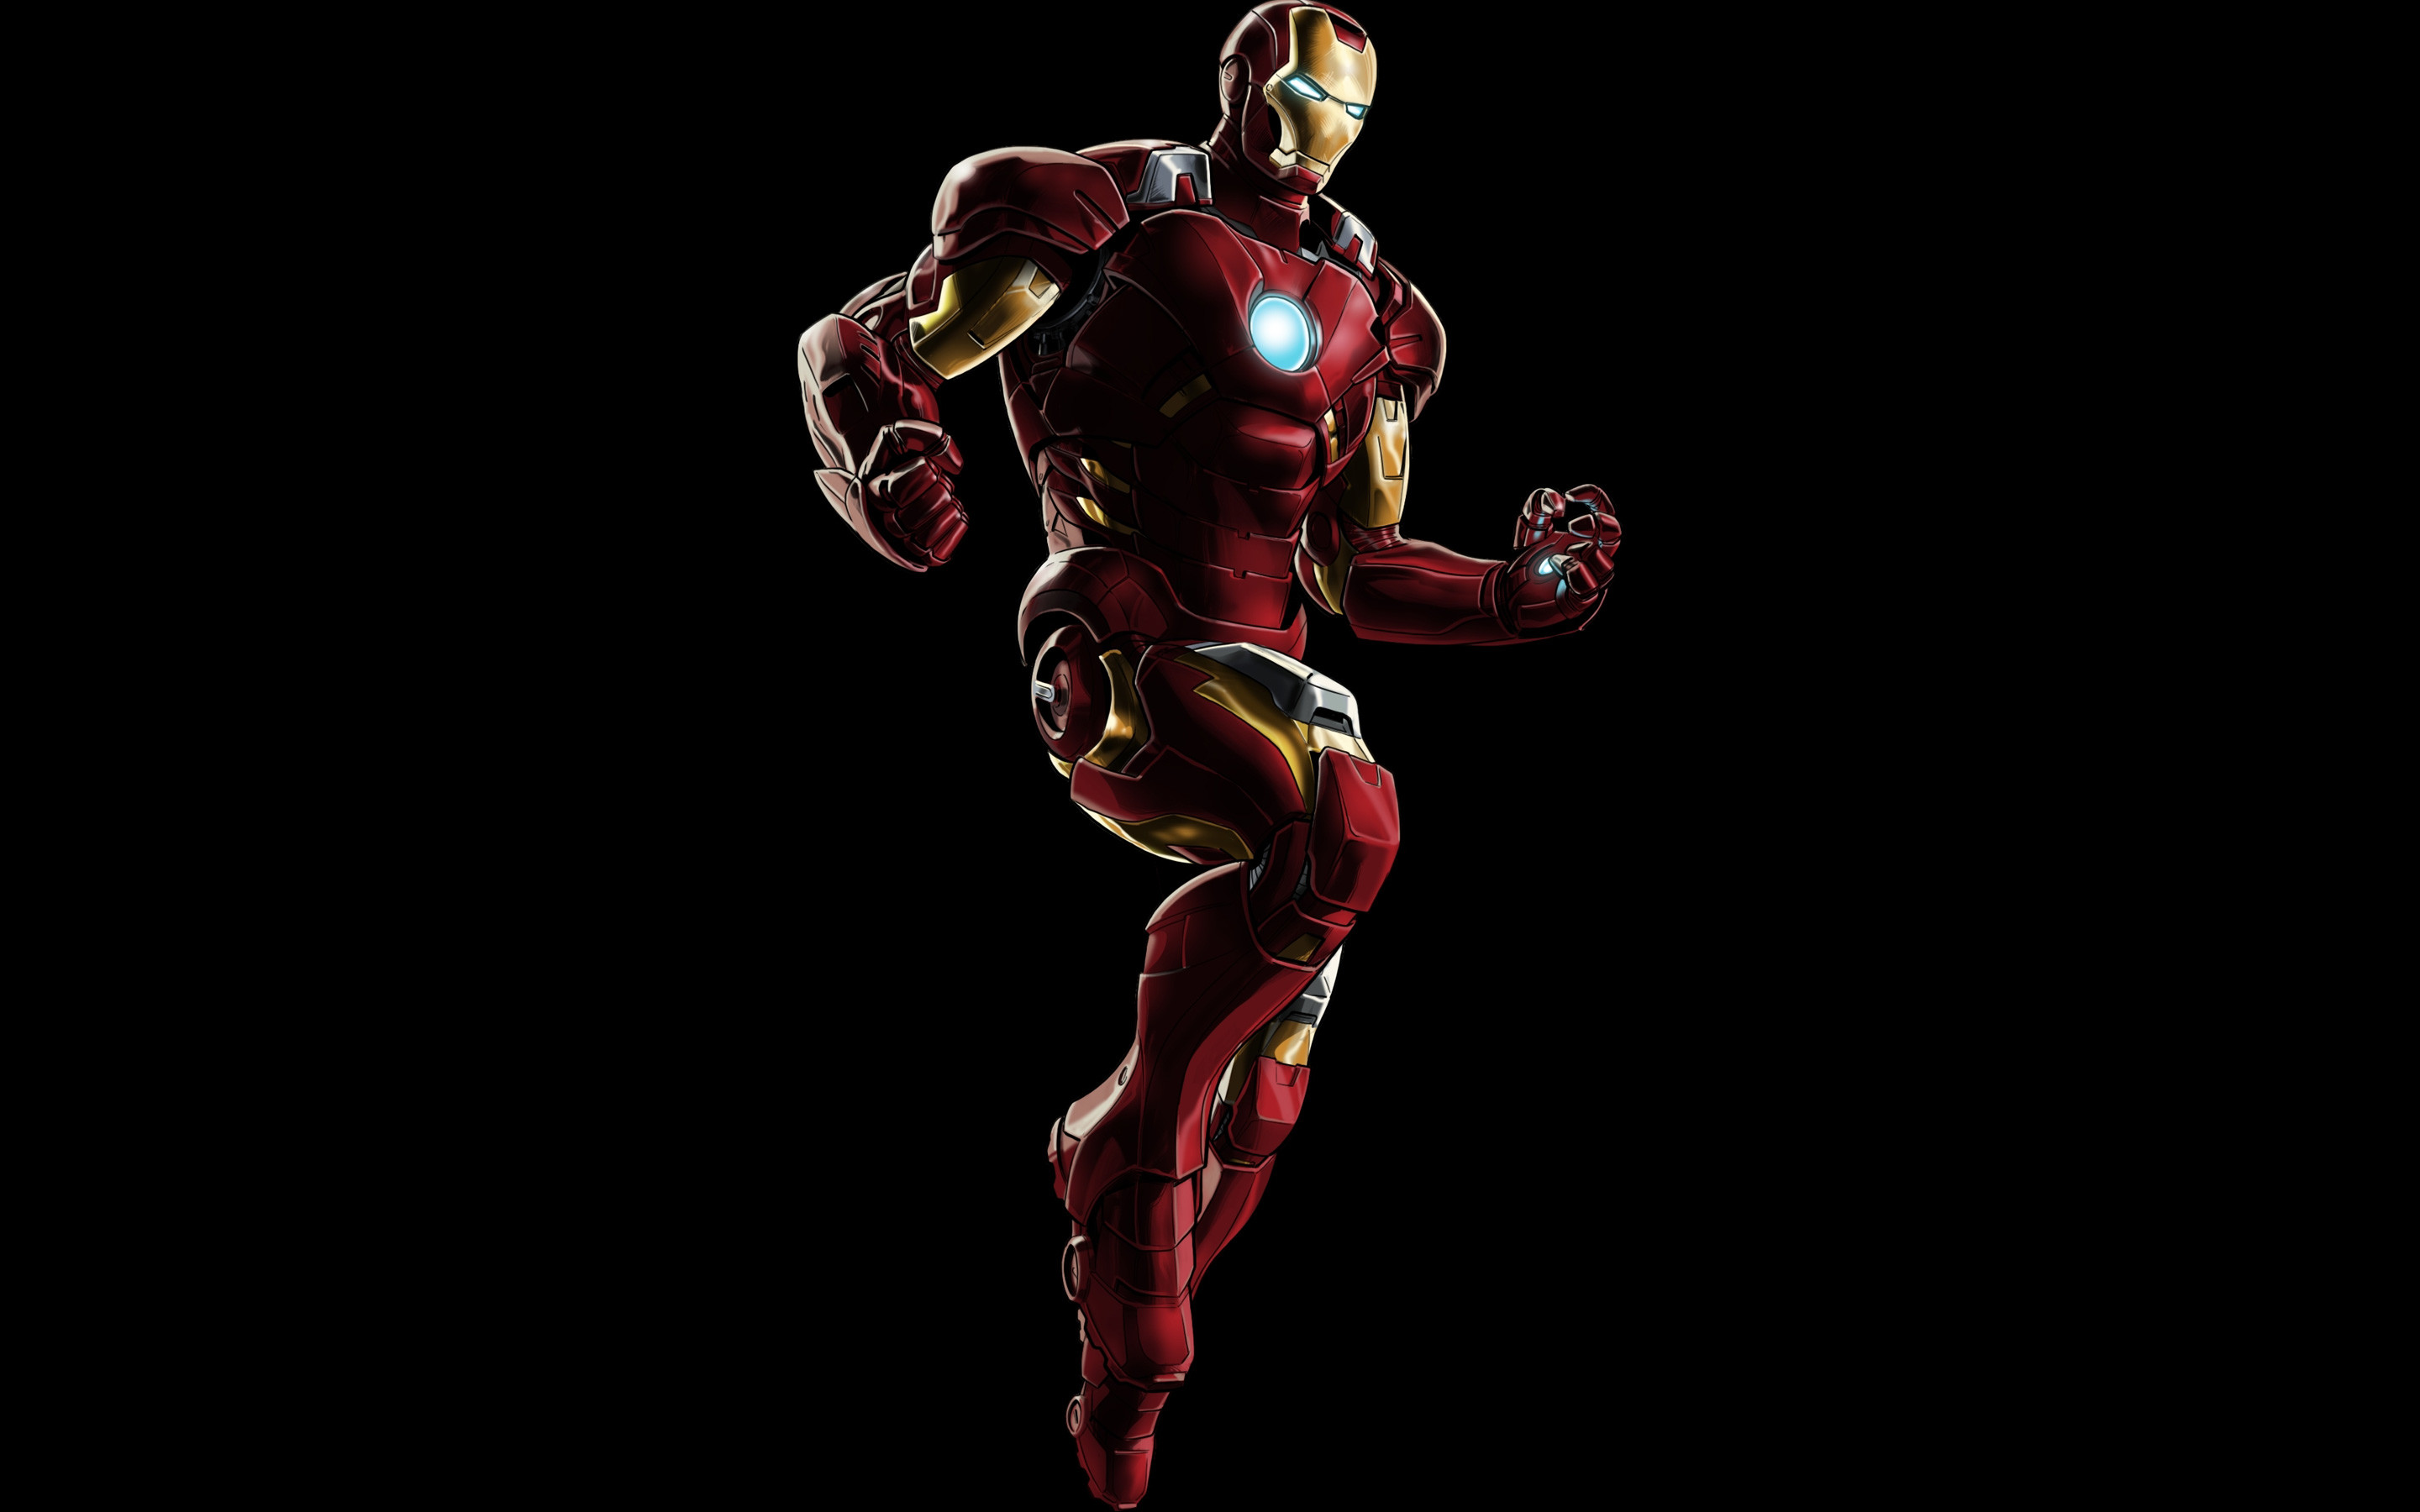 Jarvis Iron Man Wallpaper - một điều không thể thiếu đối với fan Iron Man. Hình nền tinh tế, với gam màu cực kỳ đặc trưng và ngập tràn tính nghệ thuật, chắc chắn sẽ khiến cho màn hình của bạn thêm phần sáng tạo và ấn tượng.